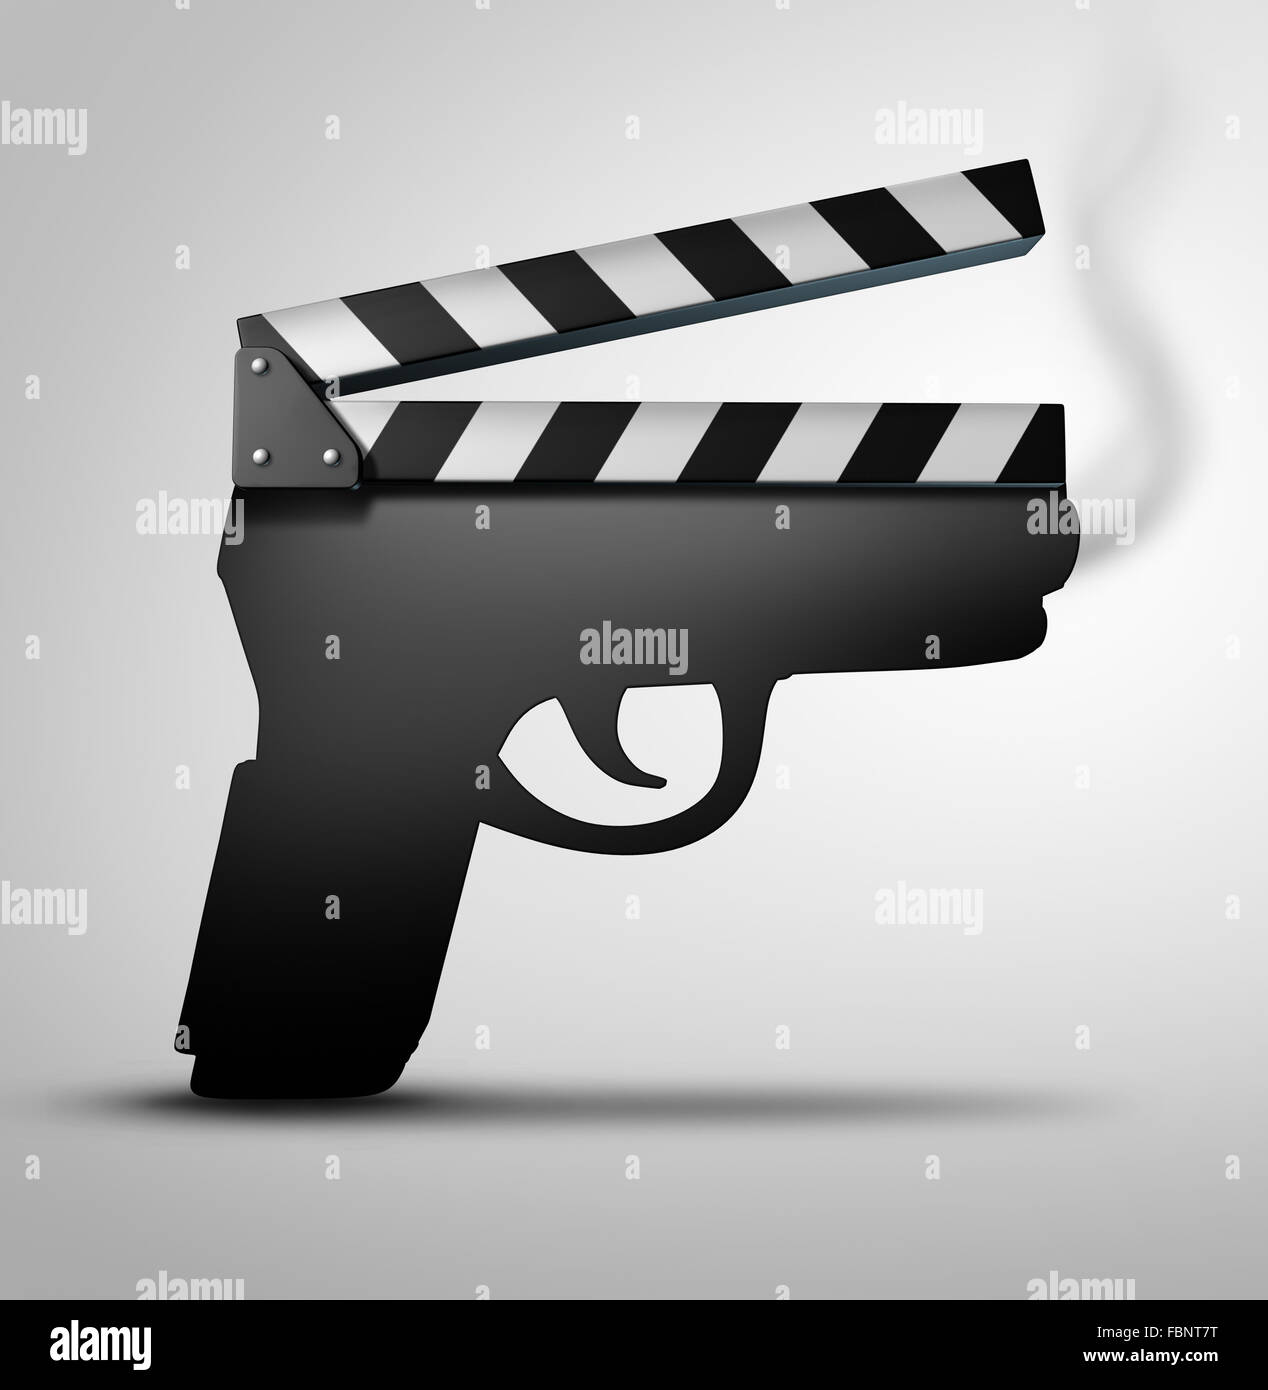 Film-Gewalt-Konzept oder Kriminalität Flick Konzept als Klappe oder Film Schiefer Board geformt wie eine Waffe als Symbol für Geschütze im Fernsehen Internet oder Filme. Stockfoto